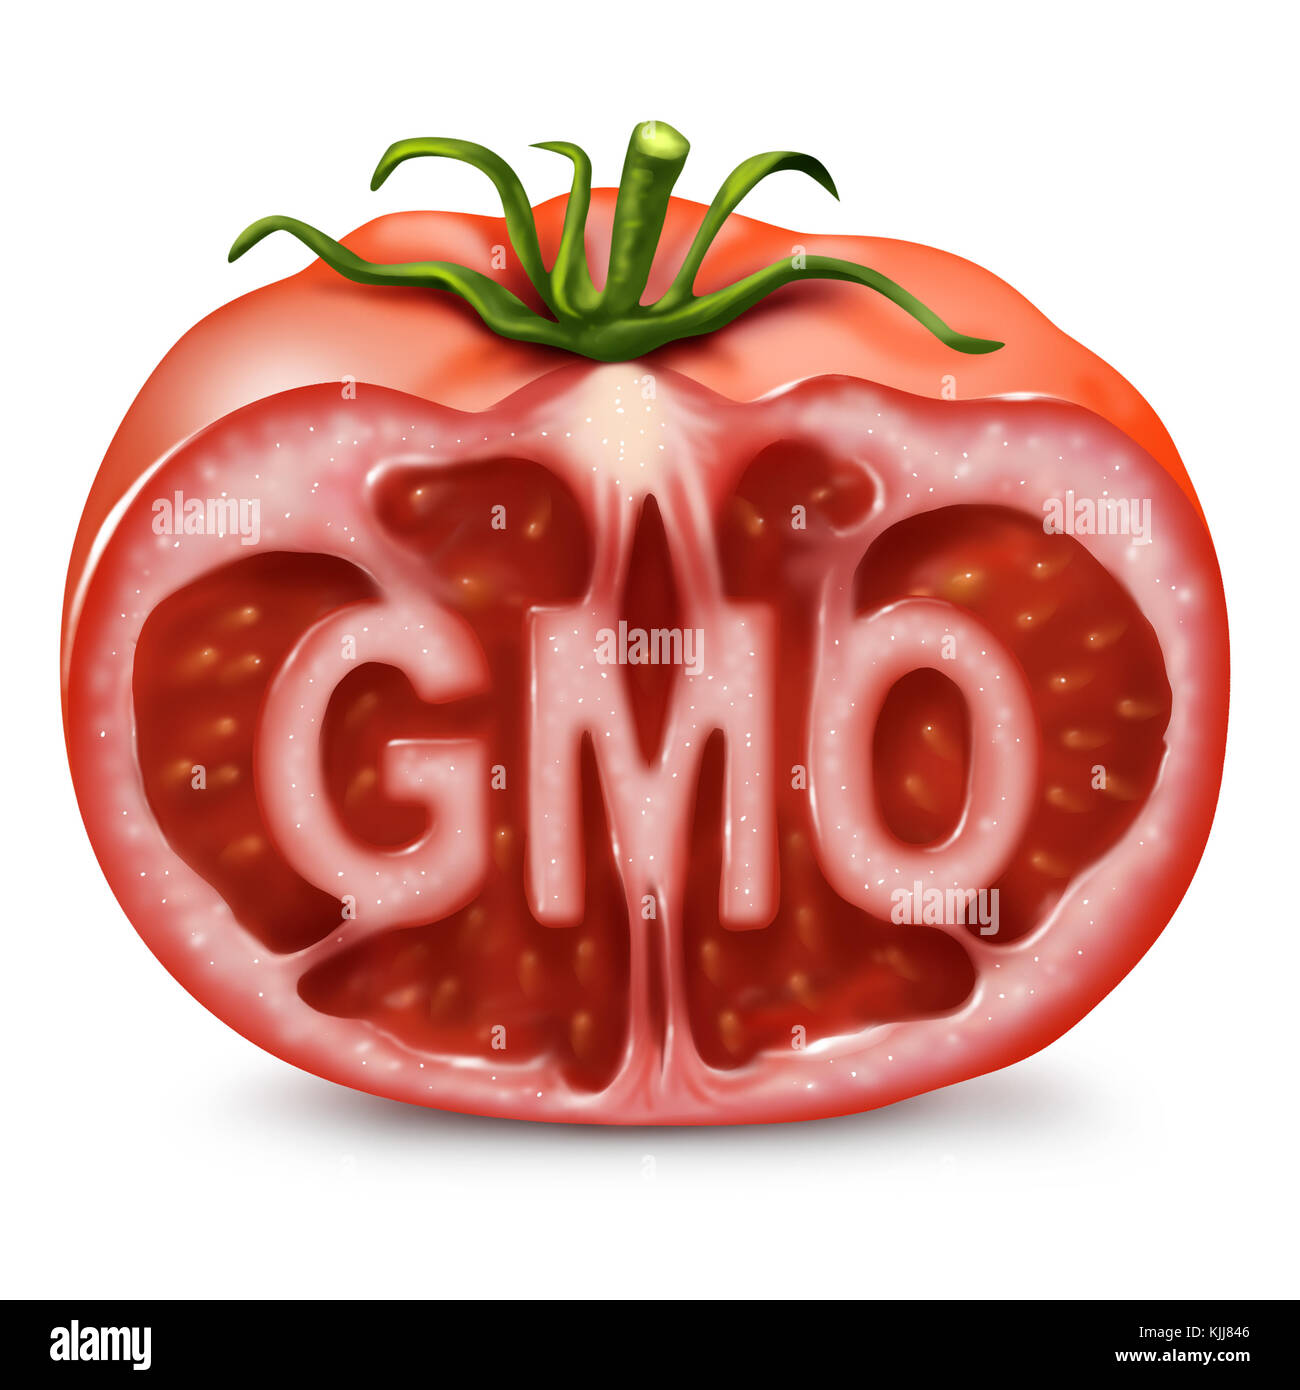 Símbolo de alimentos transgénicos como un organismo modificado genéticamente y de la ingeniería genética para producir un tomate picado con el texto de dentro como en una ilustración 3d de estilo. Foto de stock